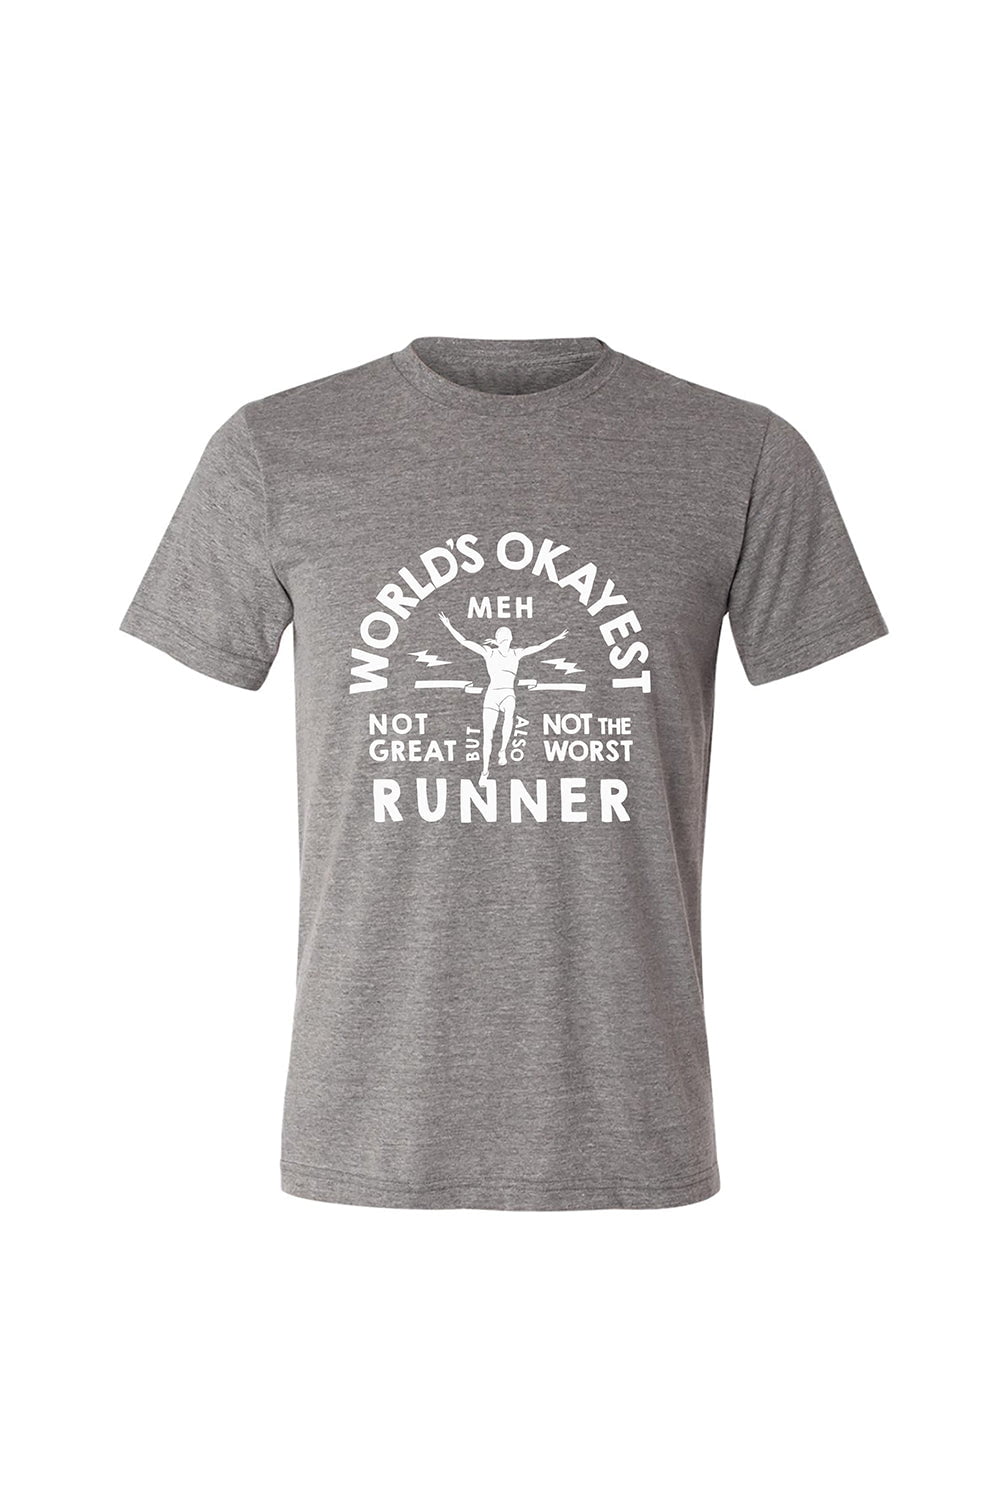 Sarah Marie Design Studio World's Okayest Runner T-Shirt